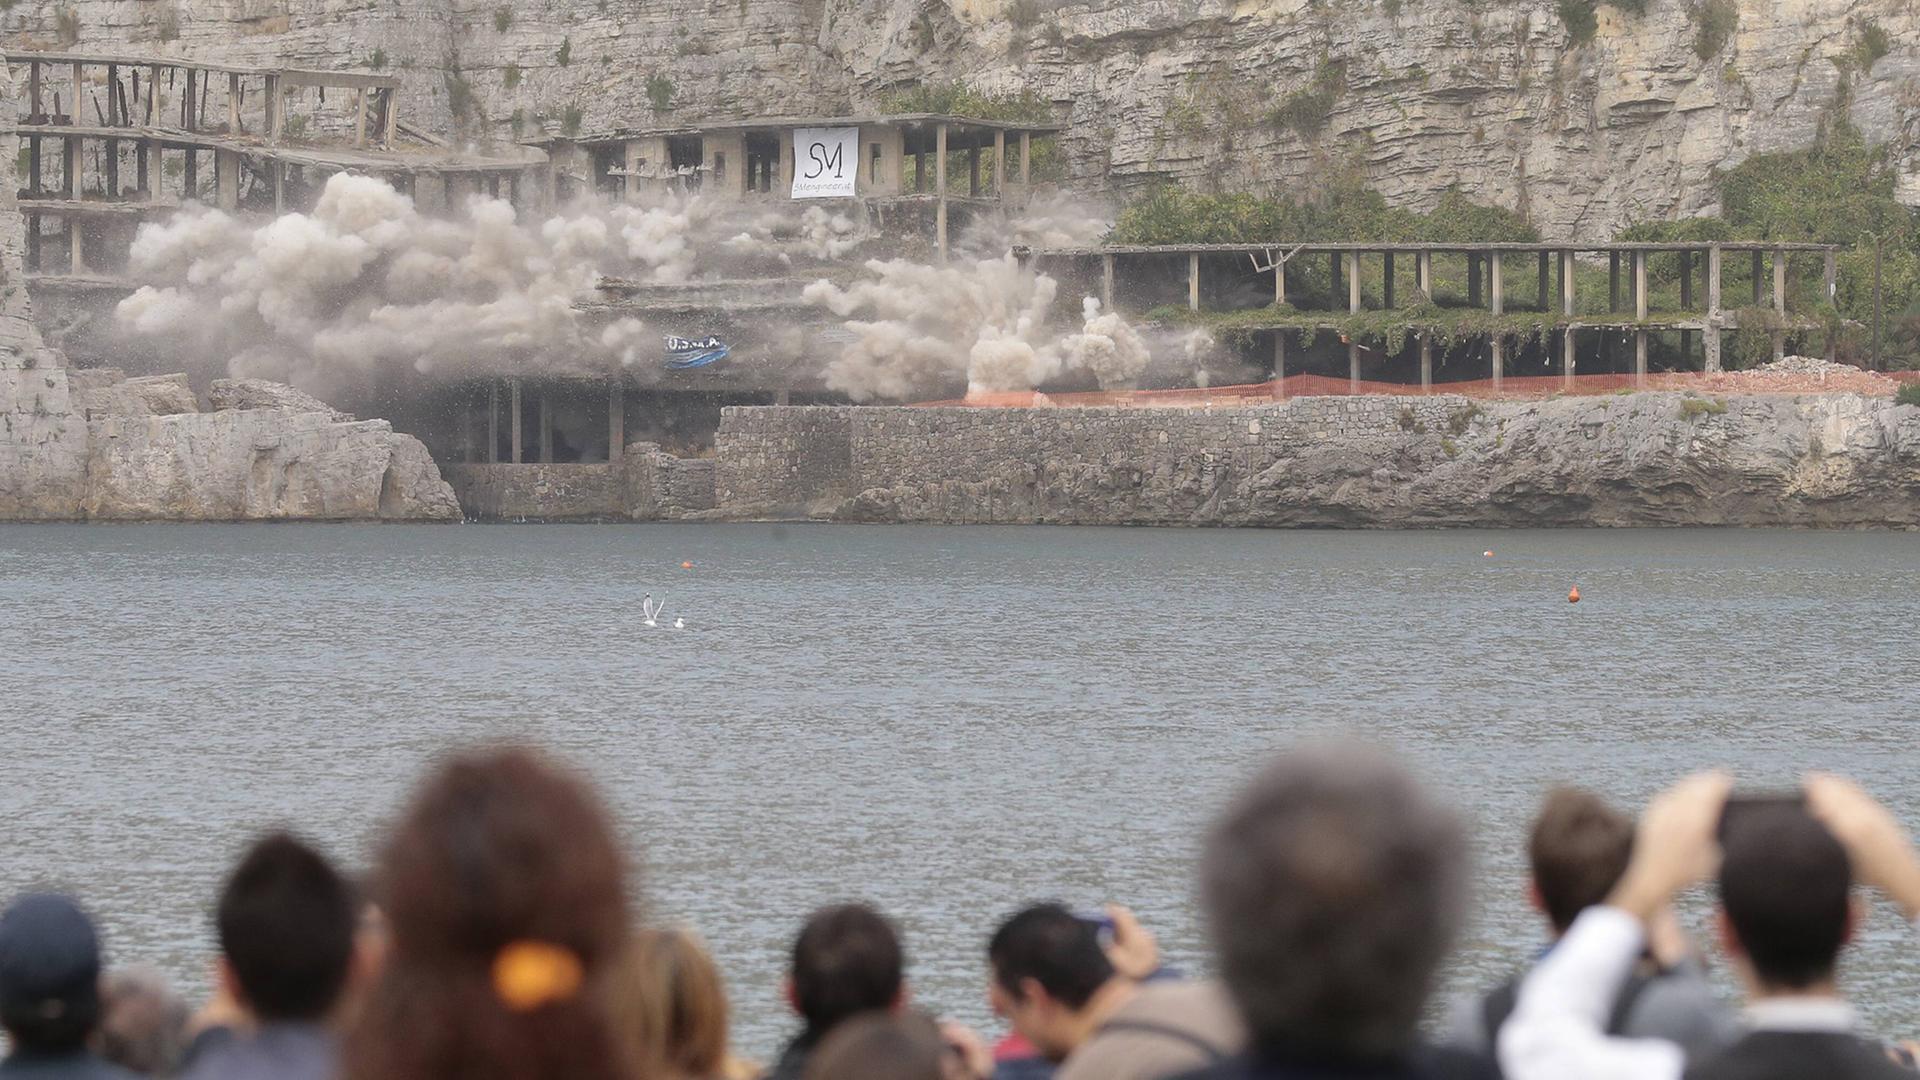 Sprengung der Bauruine Alimuri Vico Equense am 30.11.2014 im italienischen Neapel